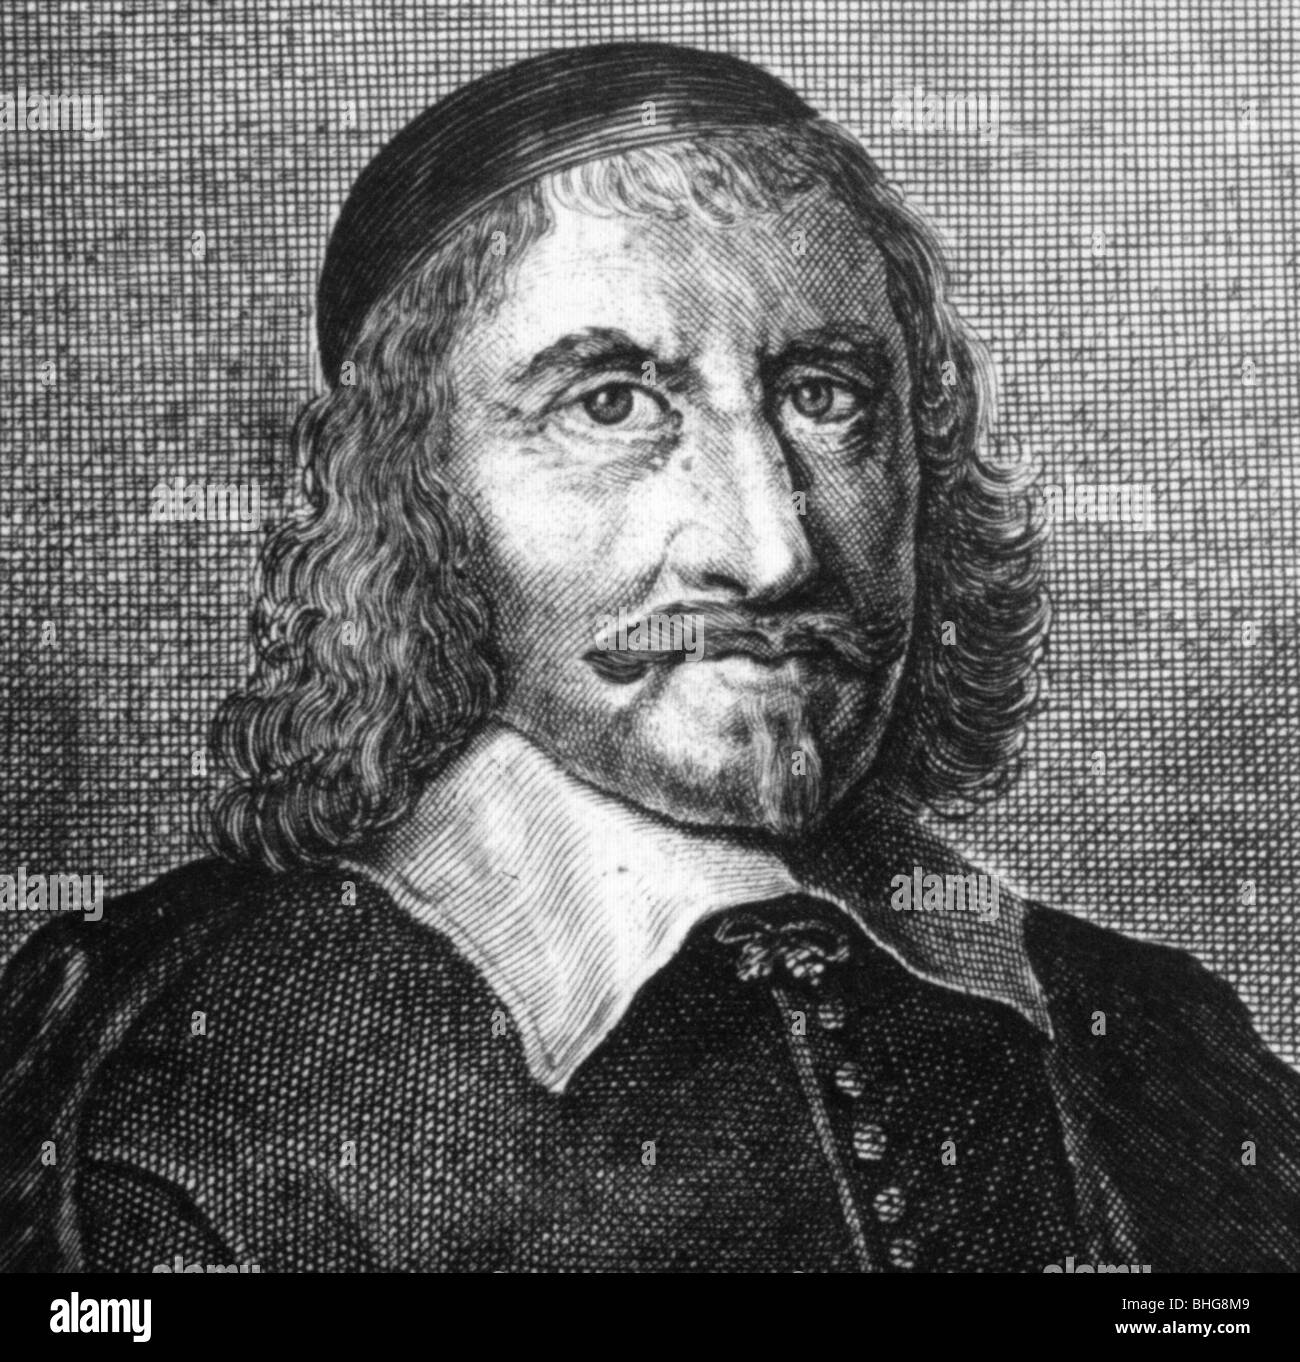 THOMAS HOBBES - philosophe politique anglais (1588-1679) Banque D'Images